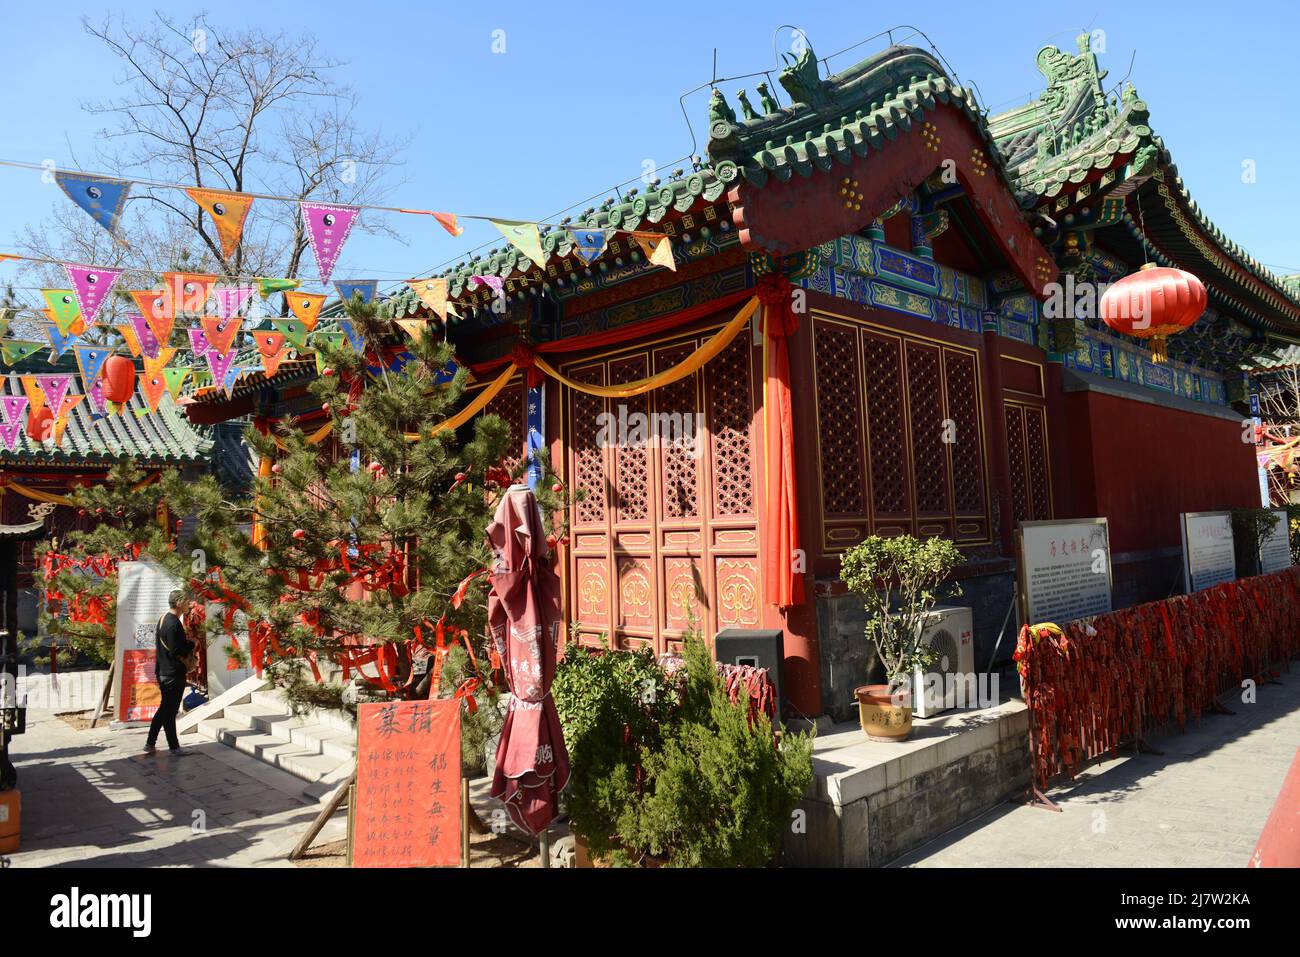 Der Feuertempel des Himmlischen Friedens (auch bekannt als Shichahai Feuertempel) ist ein alter taoistischer Tempel im Xicheng Bezirk in Peking, China. Stockfoto